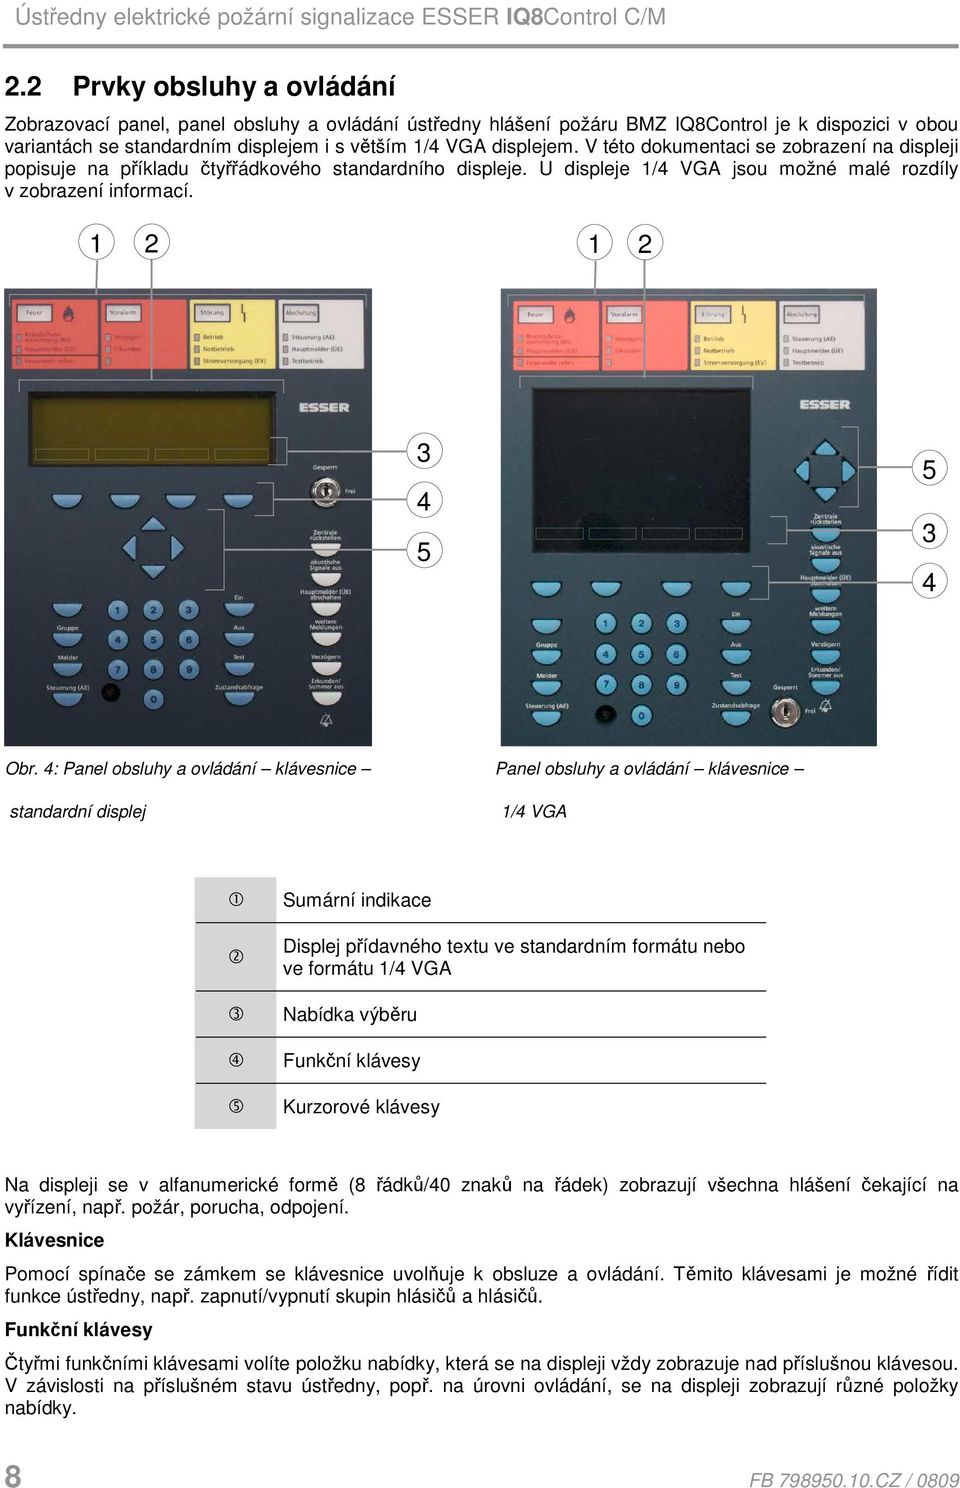 4: Panel obsluhy a ovládání klávesnice Panel obsluhy a ovládání klávesnice standardní displej 1/4 VGA 1 2 3 4 5 Sumární indikace Displej přídavného textu ve standardním formátu nebo ve formátu 1/4